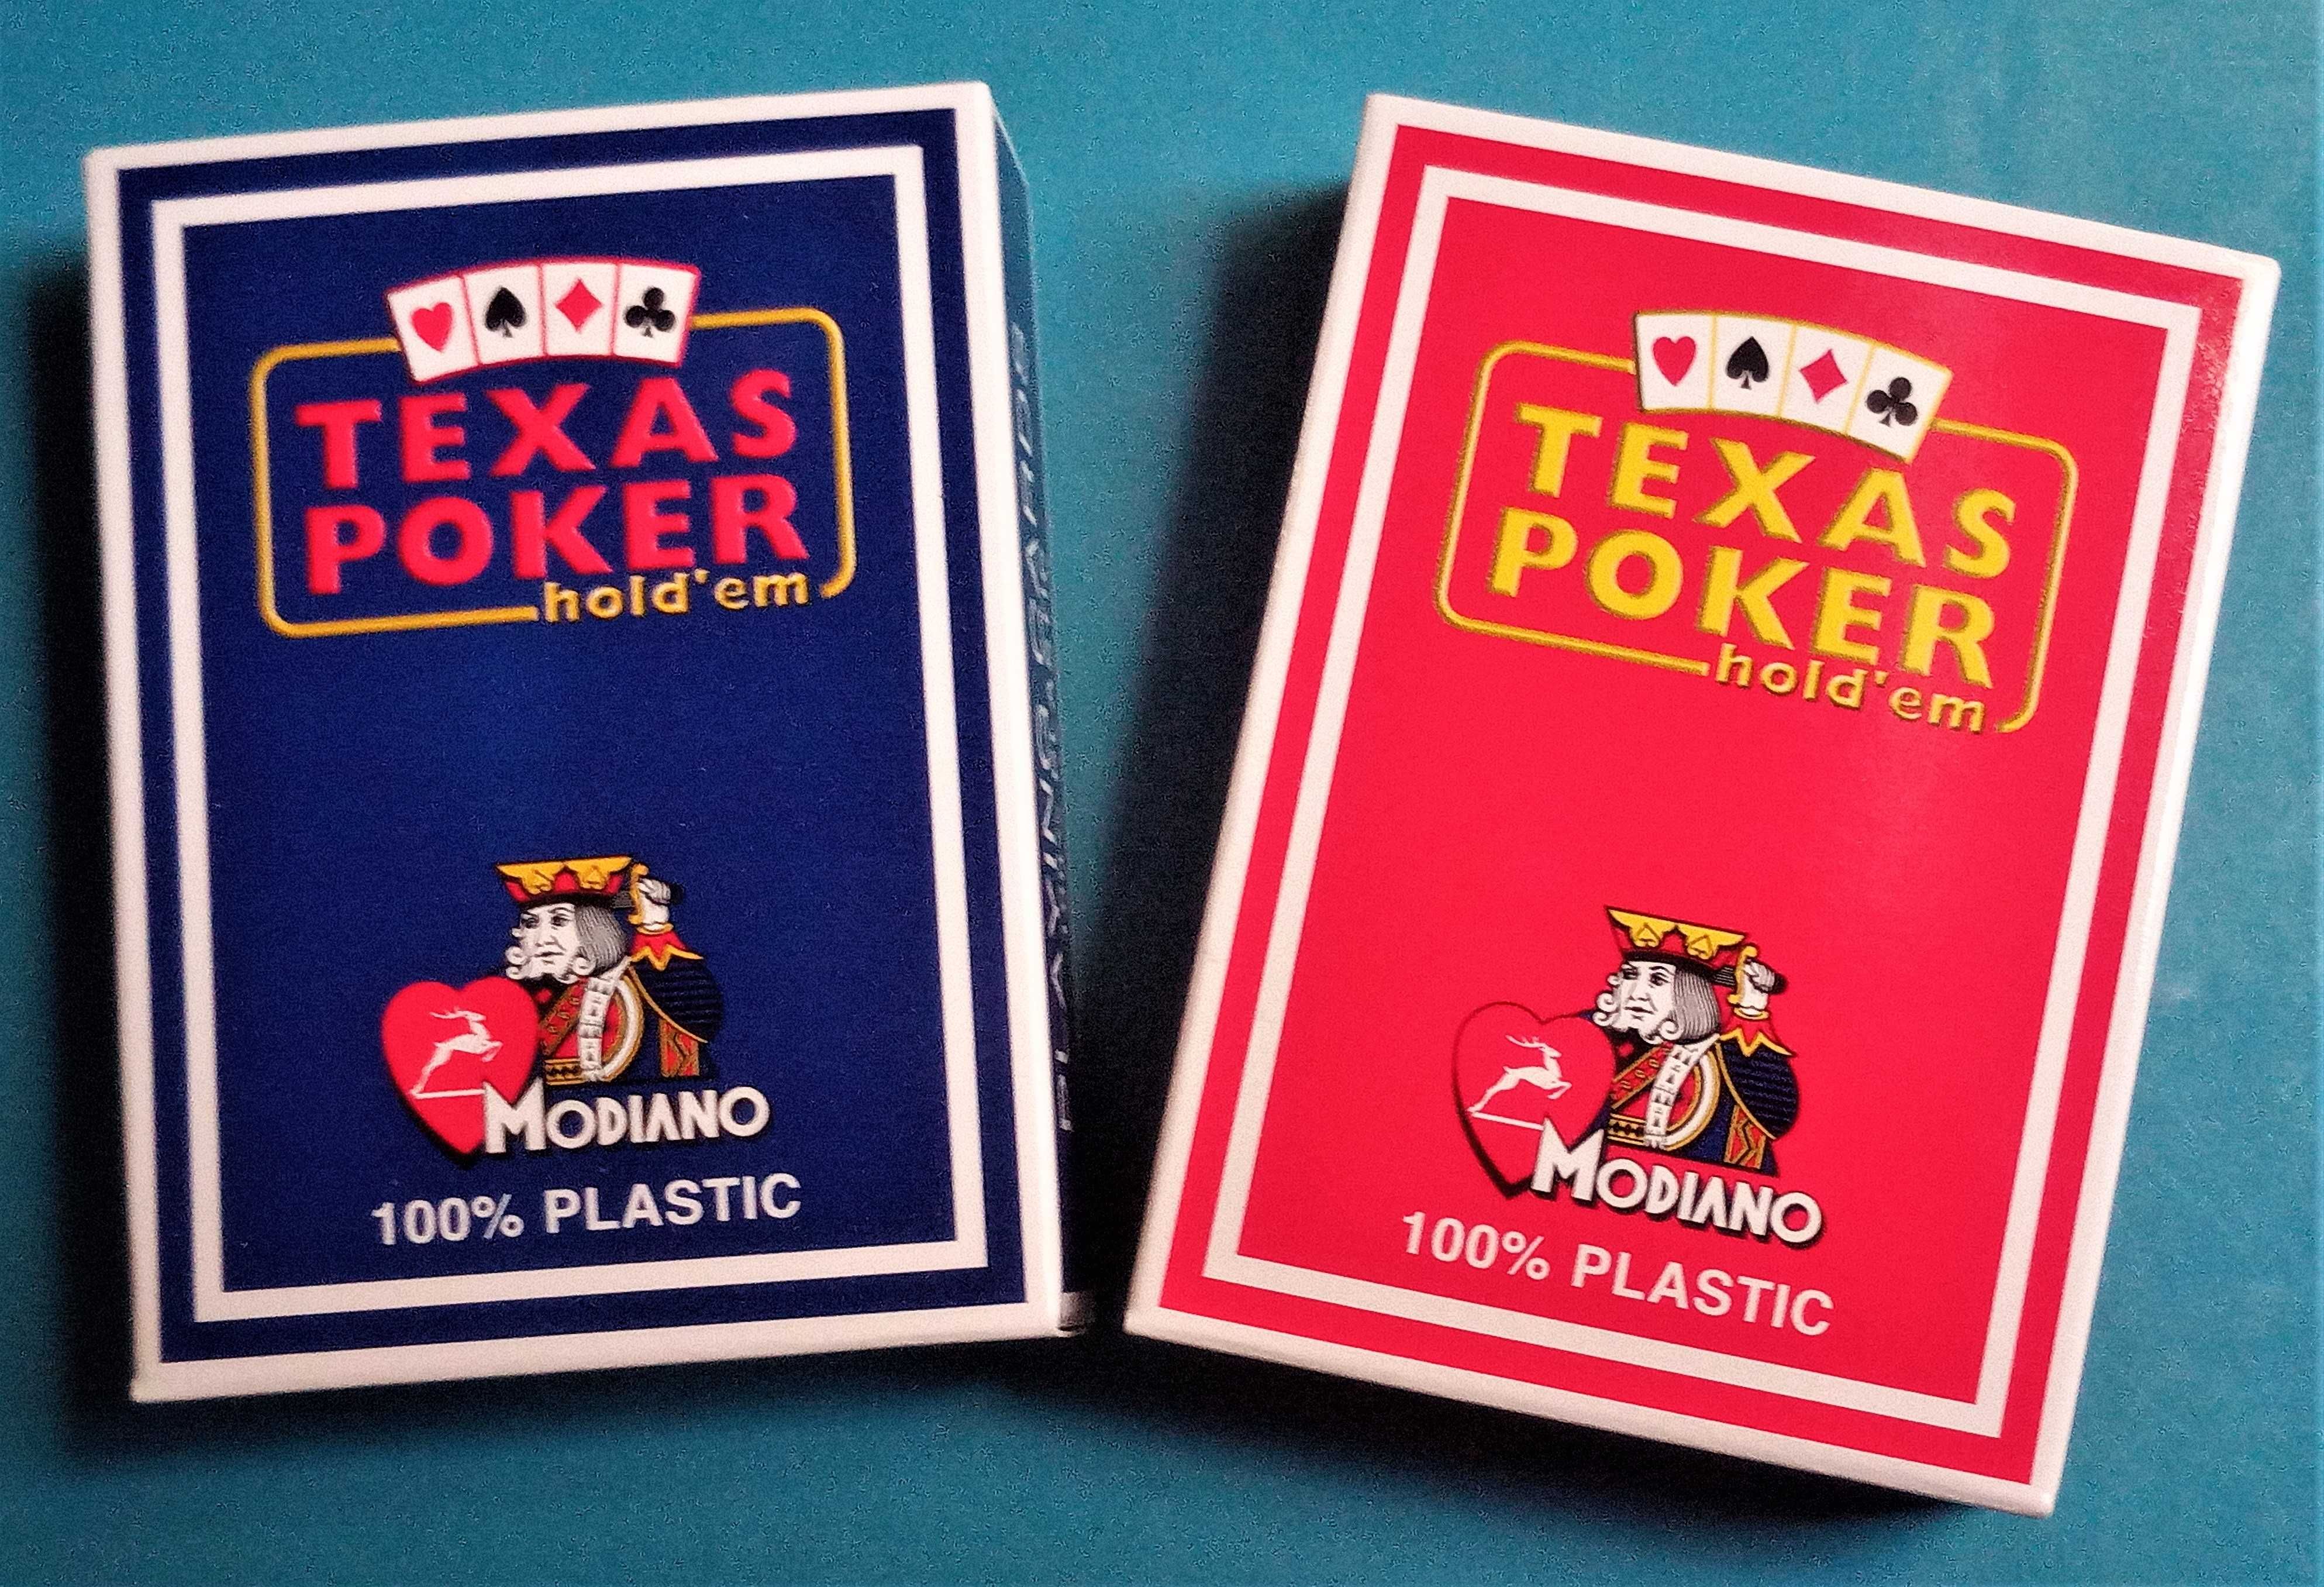 Baralho de Cartas Modiano Texas Poker Hold'em 100% Plástico